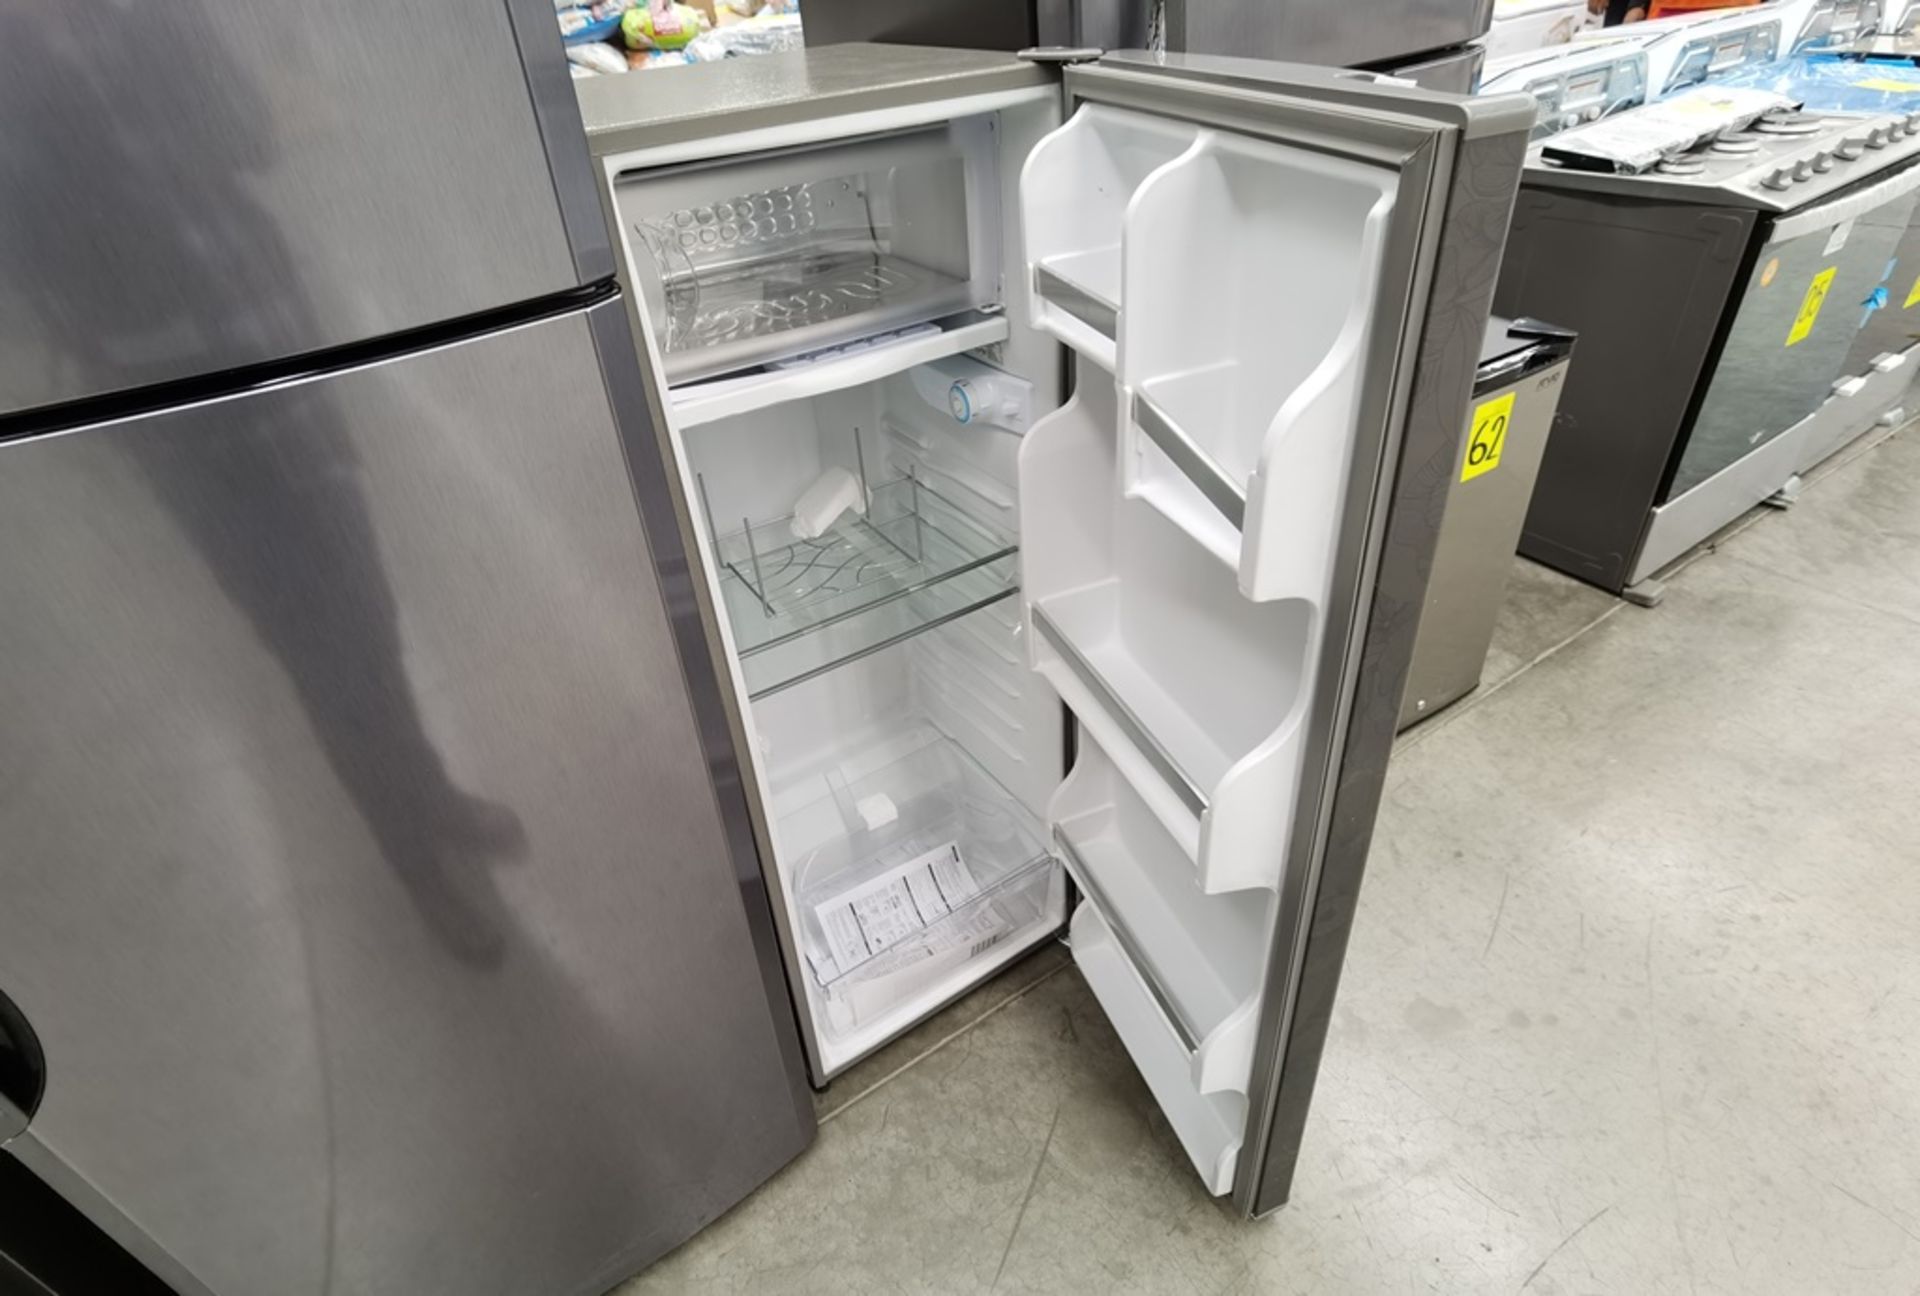 Lote de 2 refrigeradores conformado por: 1 Refrigerador maca Mabe Modelo RMS400IX, No de serie 2204 - Image 13 of 14